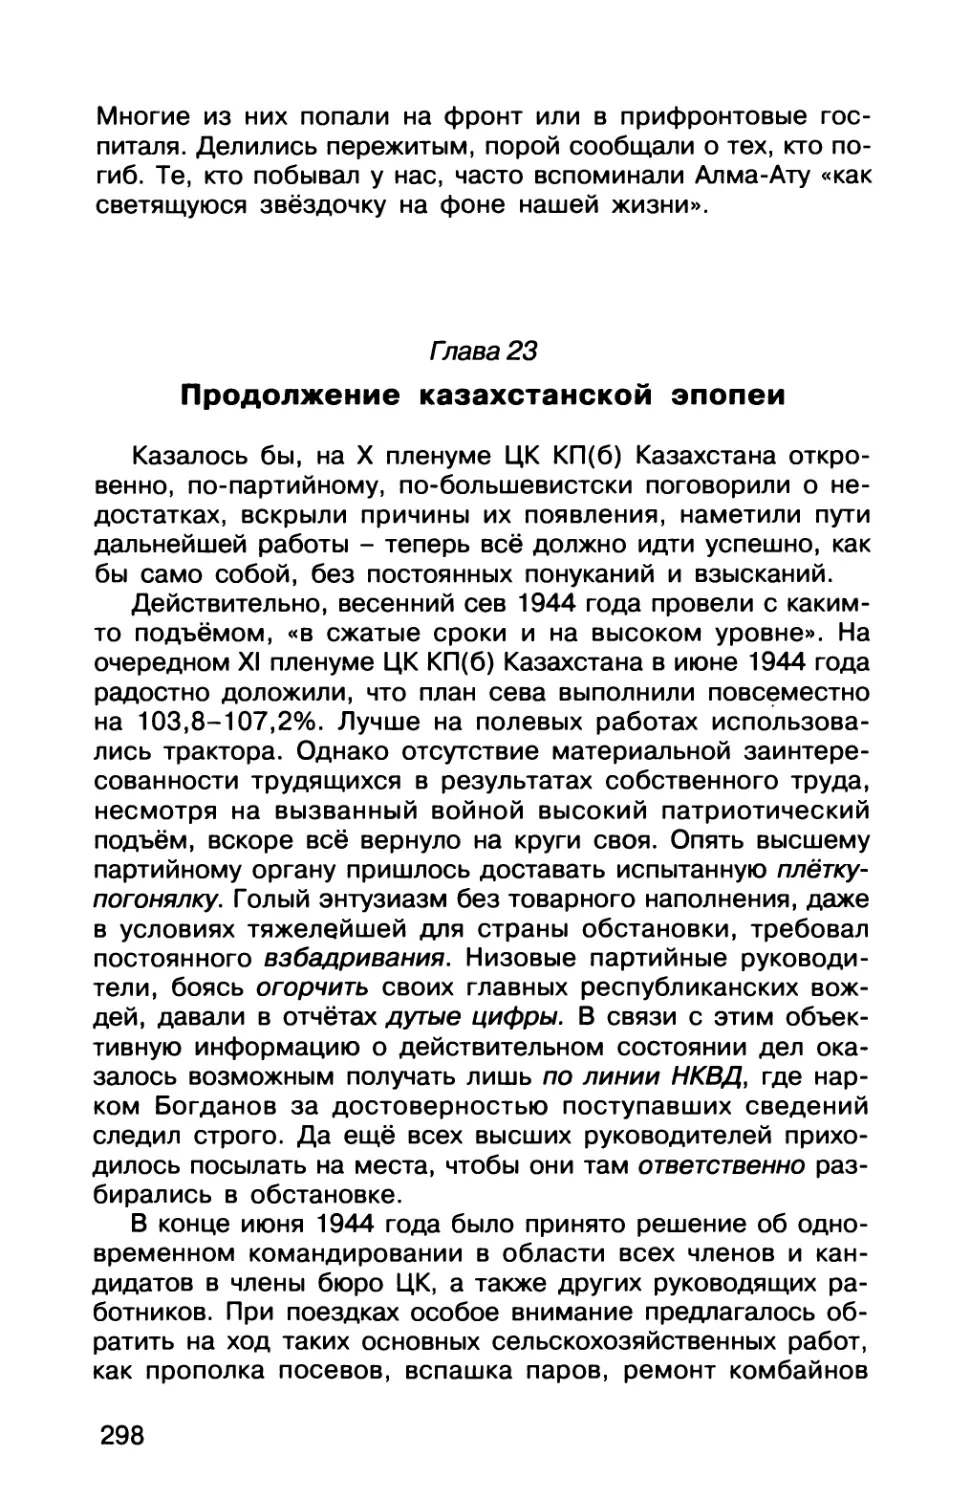 Гпава  23.  Продолжение  казахстанской  эпопеи